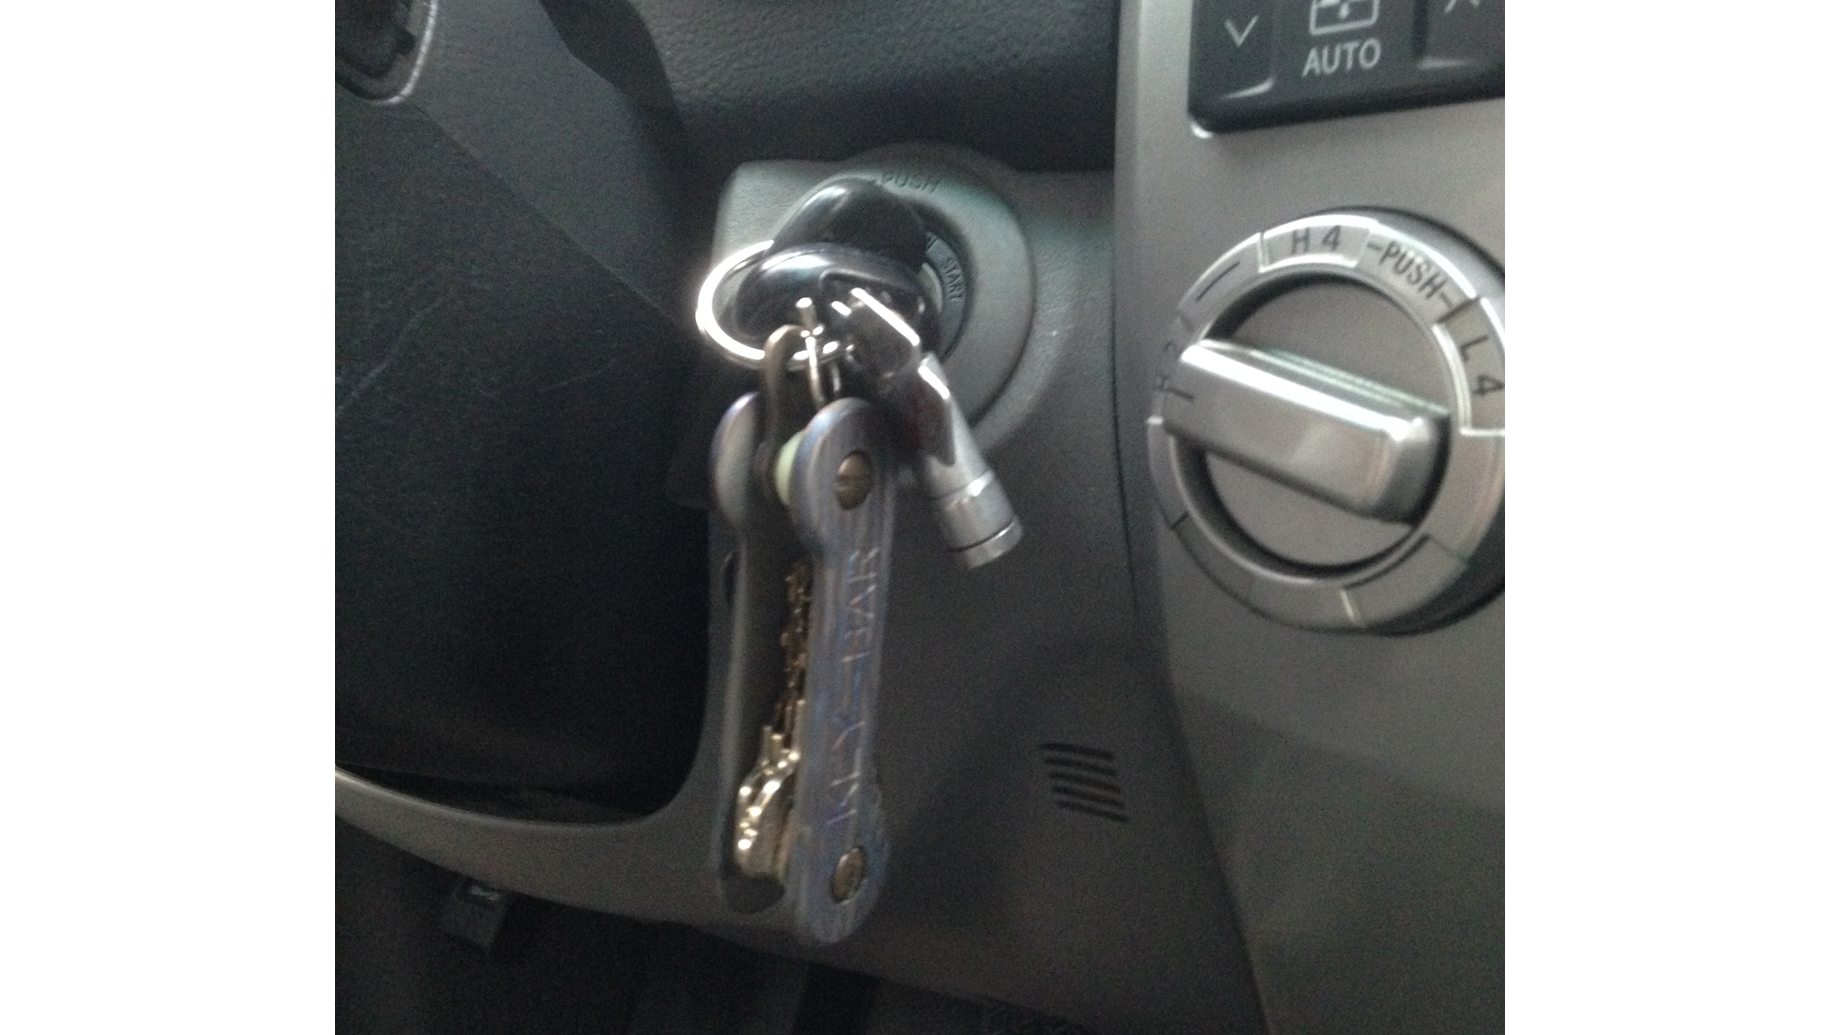 Key-bar-in-car